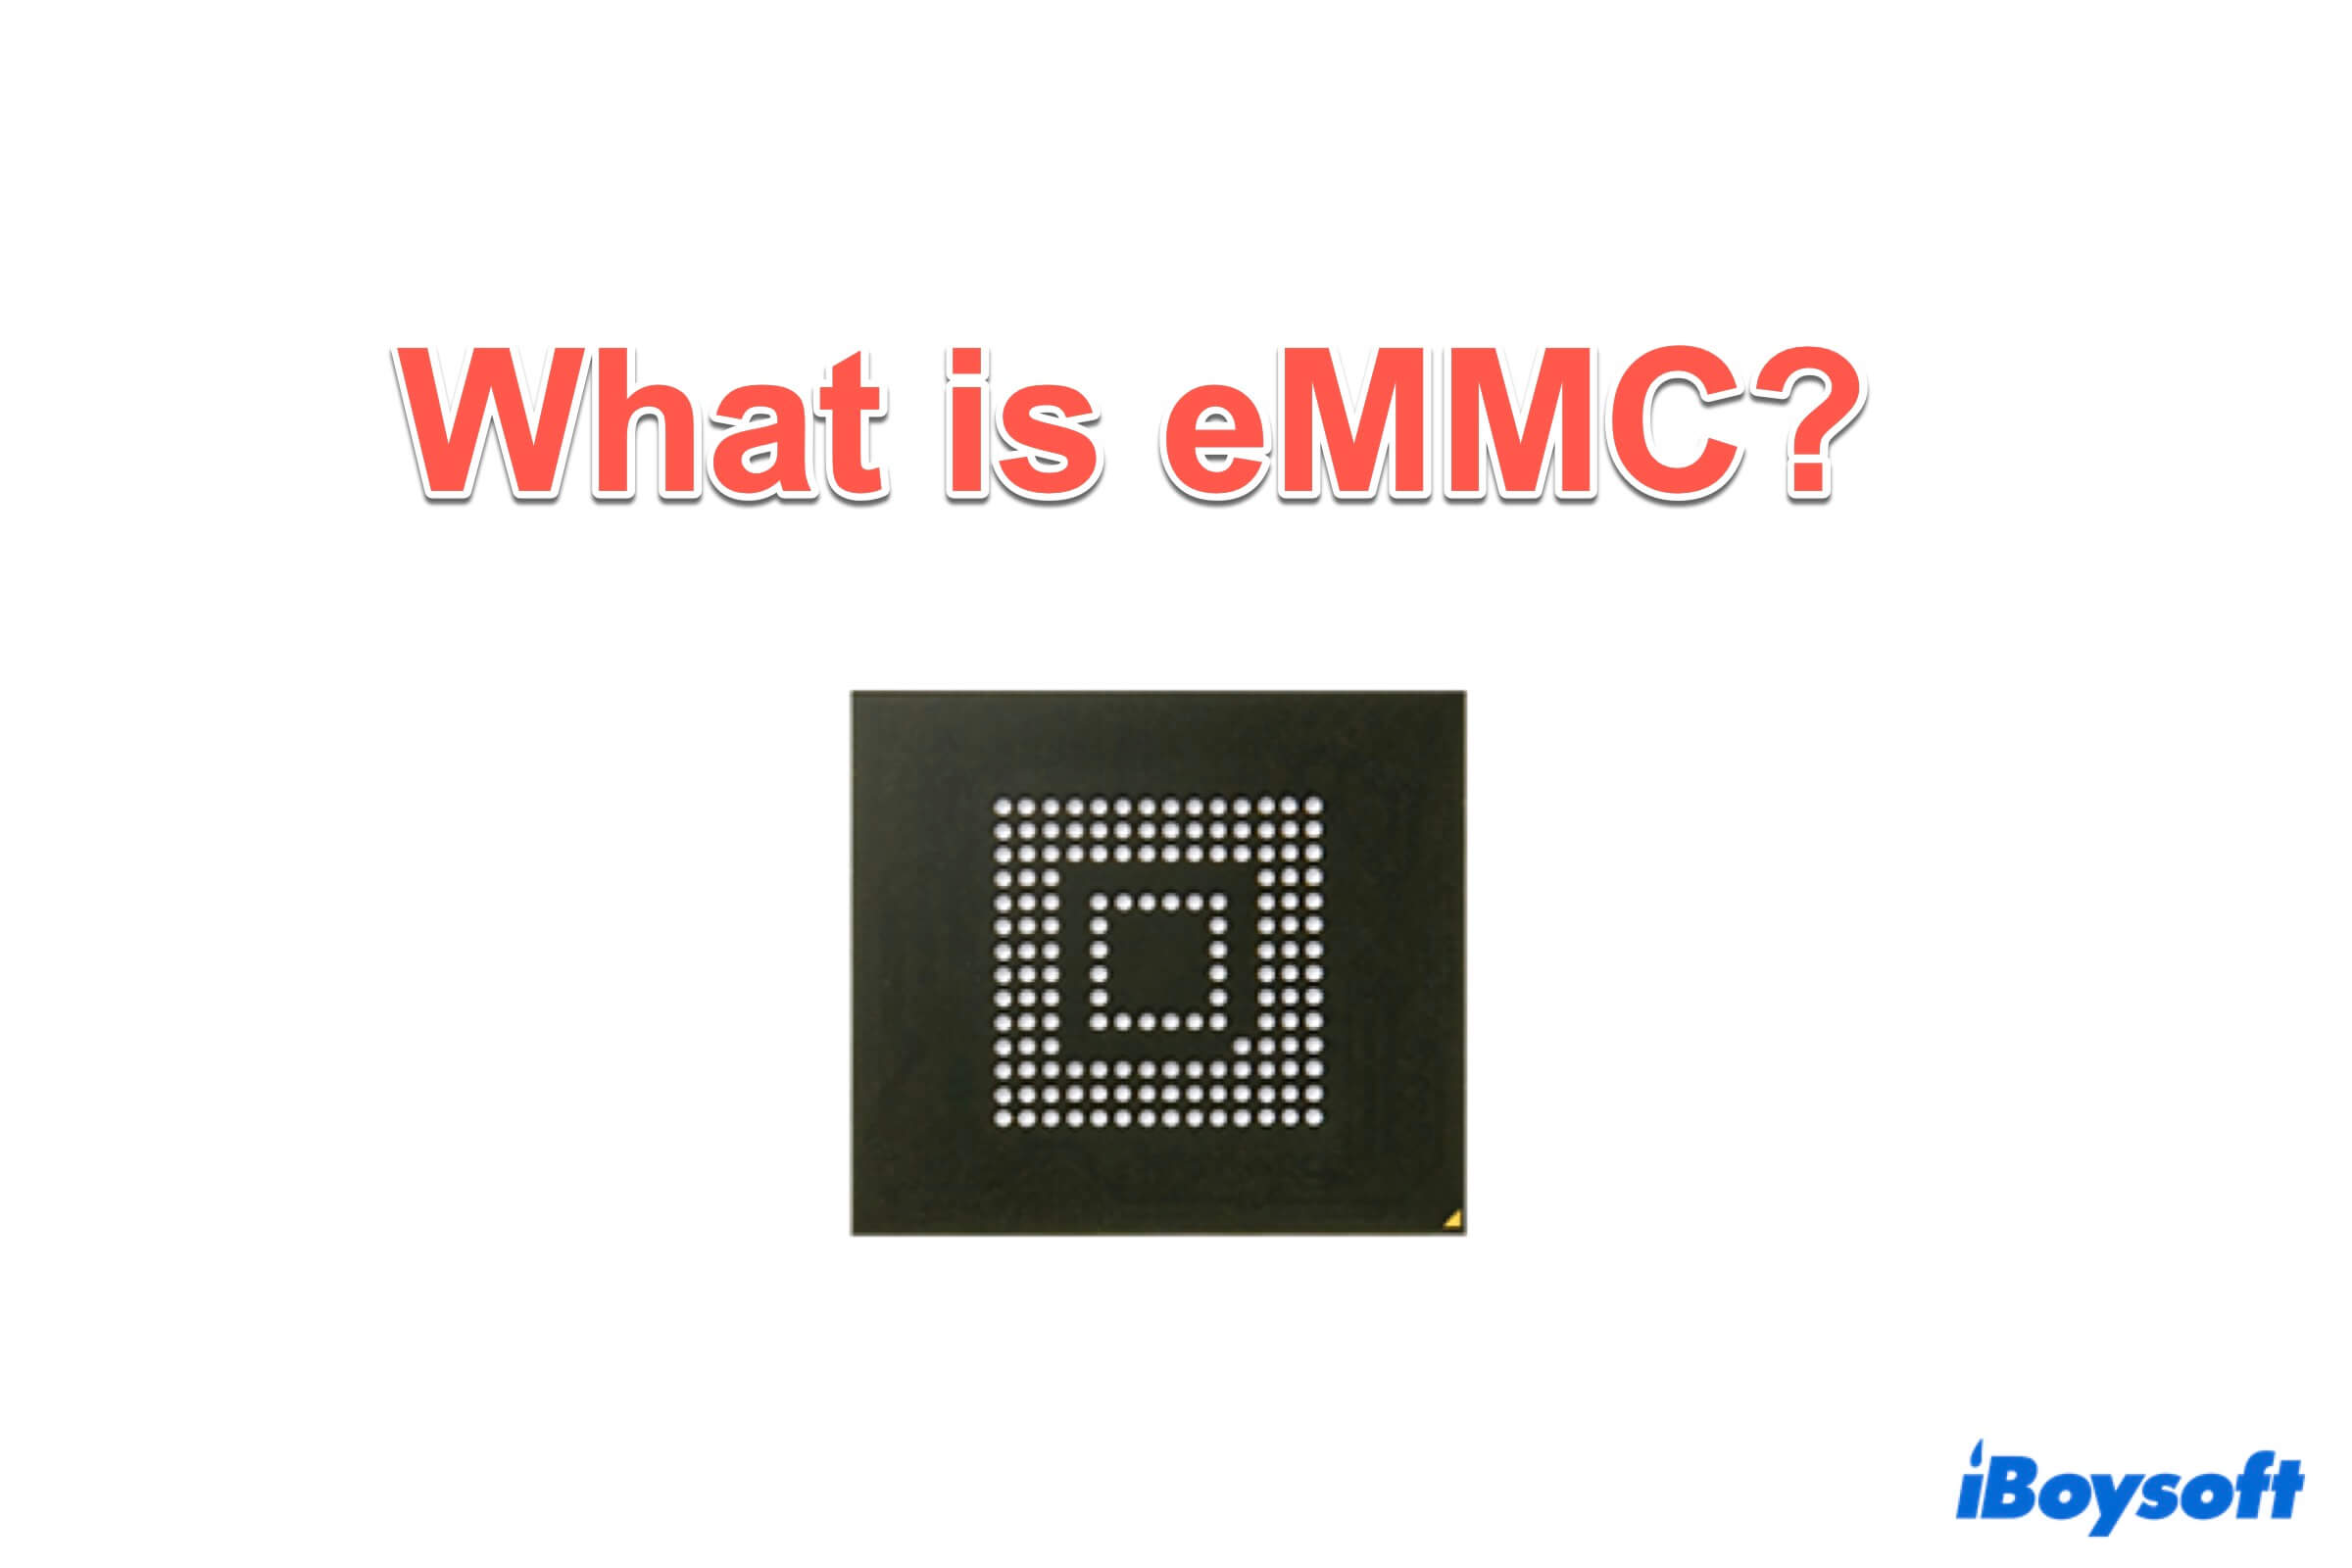 Zusammenfassung des eMMC